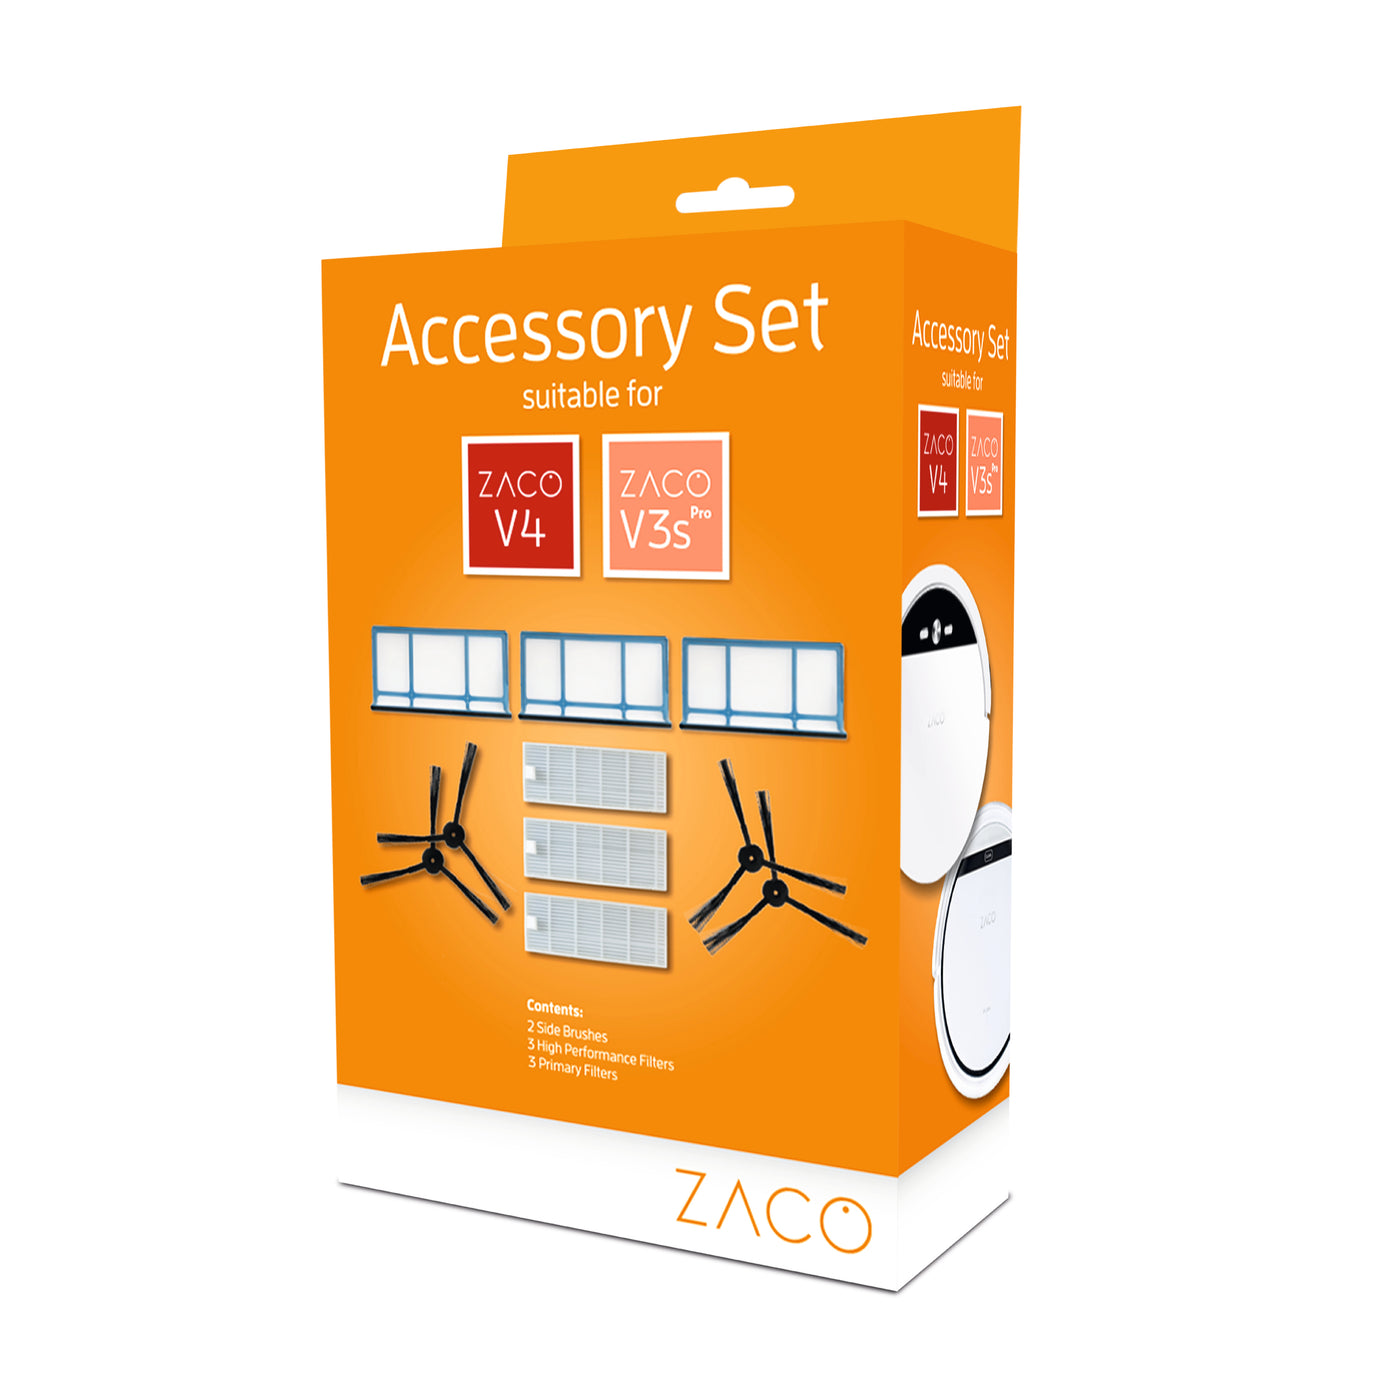 ZACO Kit d’accessoires pour les robots aspirateurs V3sPro V4